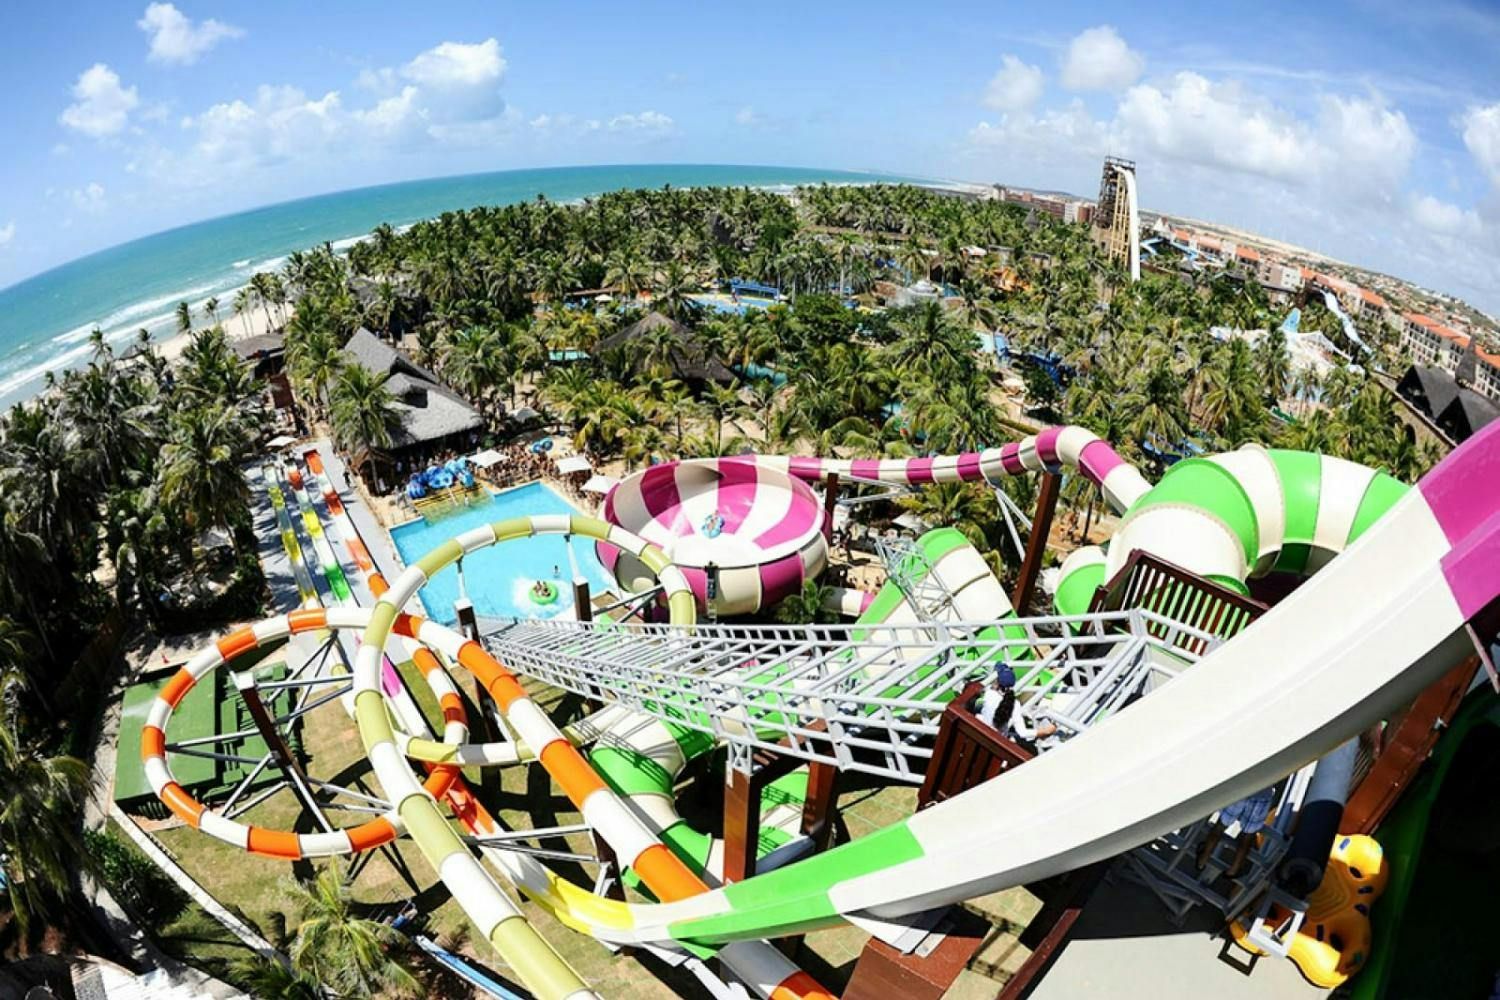 Imagen del tour: Visita guiada al parque de la playa desde Fortaleza